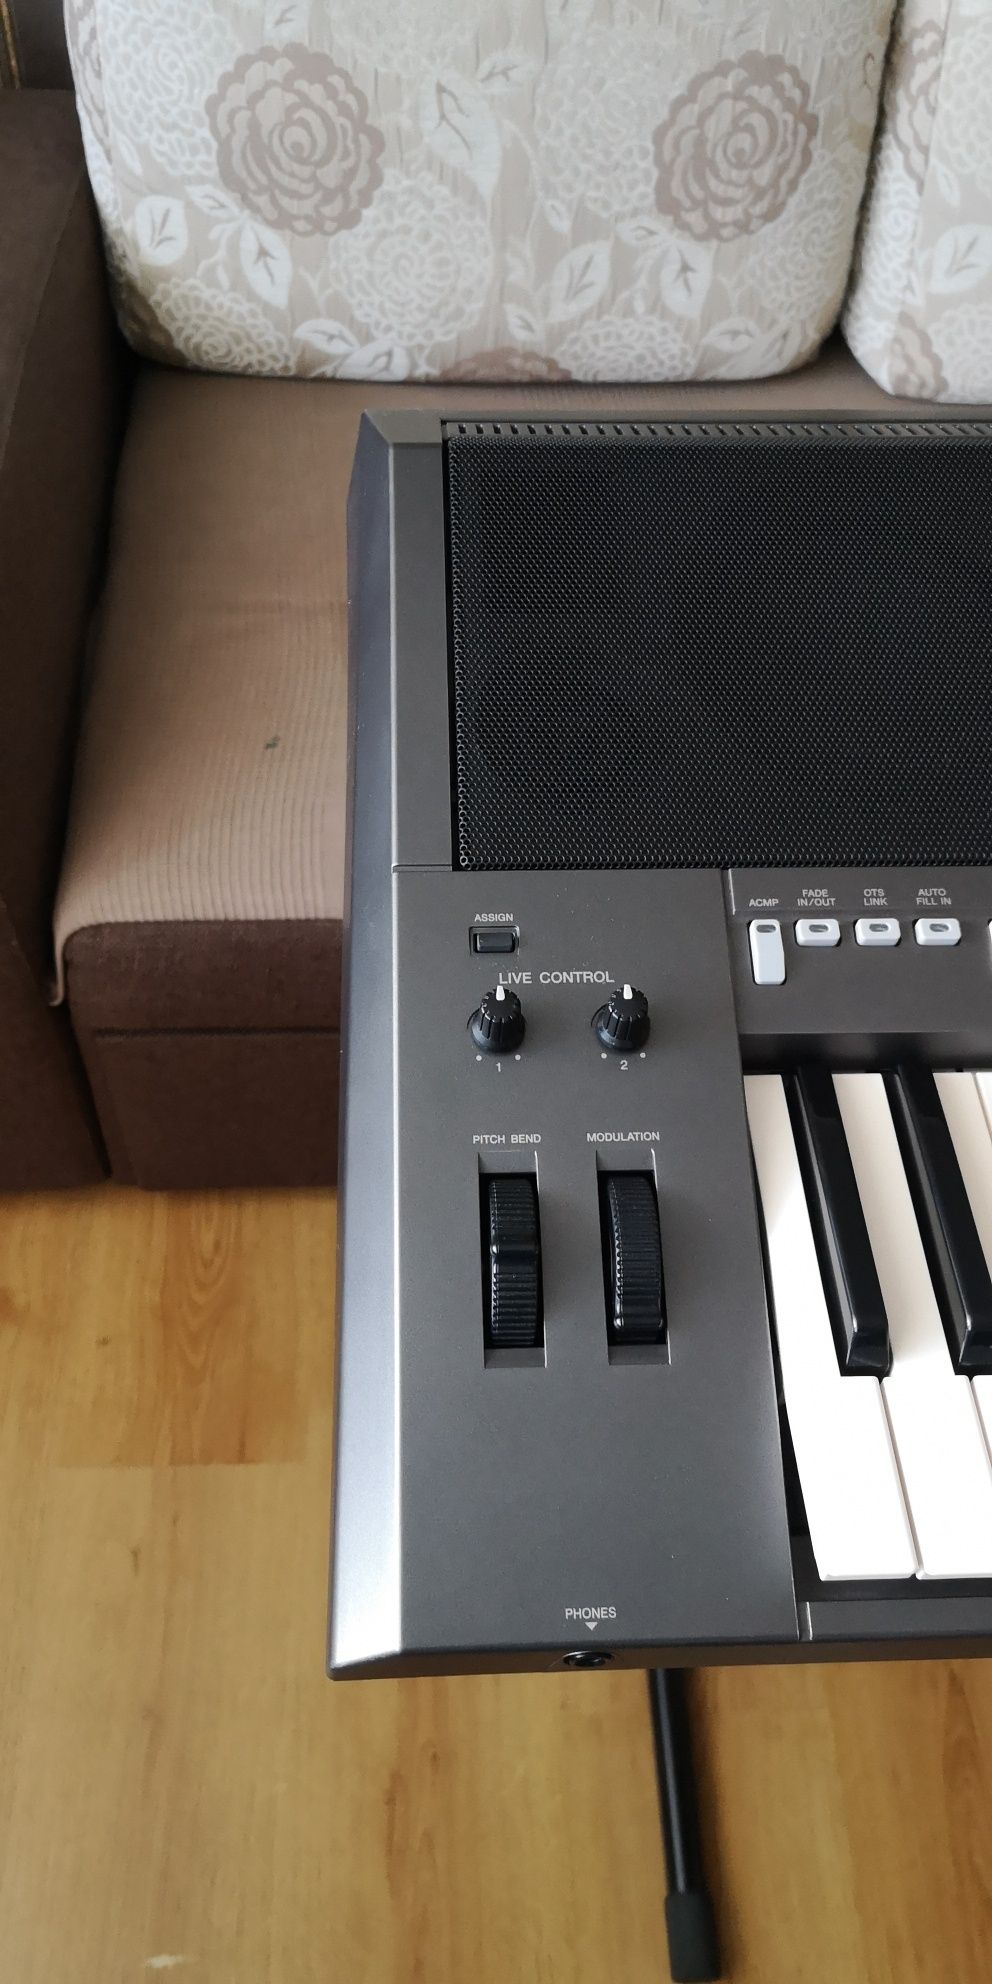 Keyboard Yamaha PSR-S970 - flagowy model